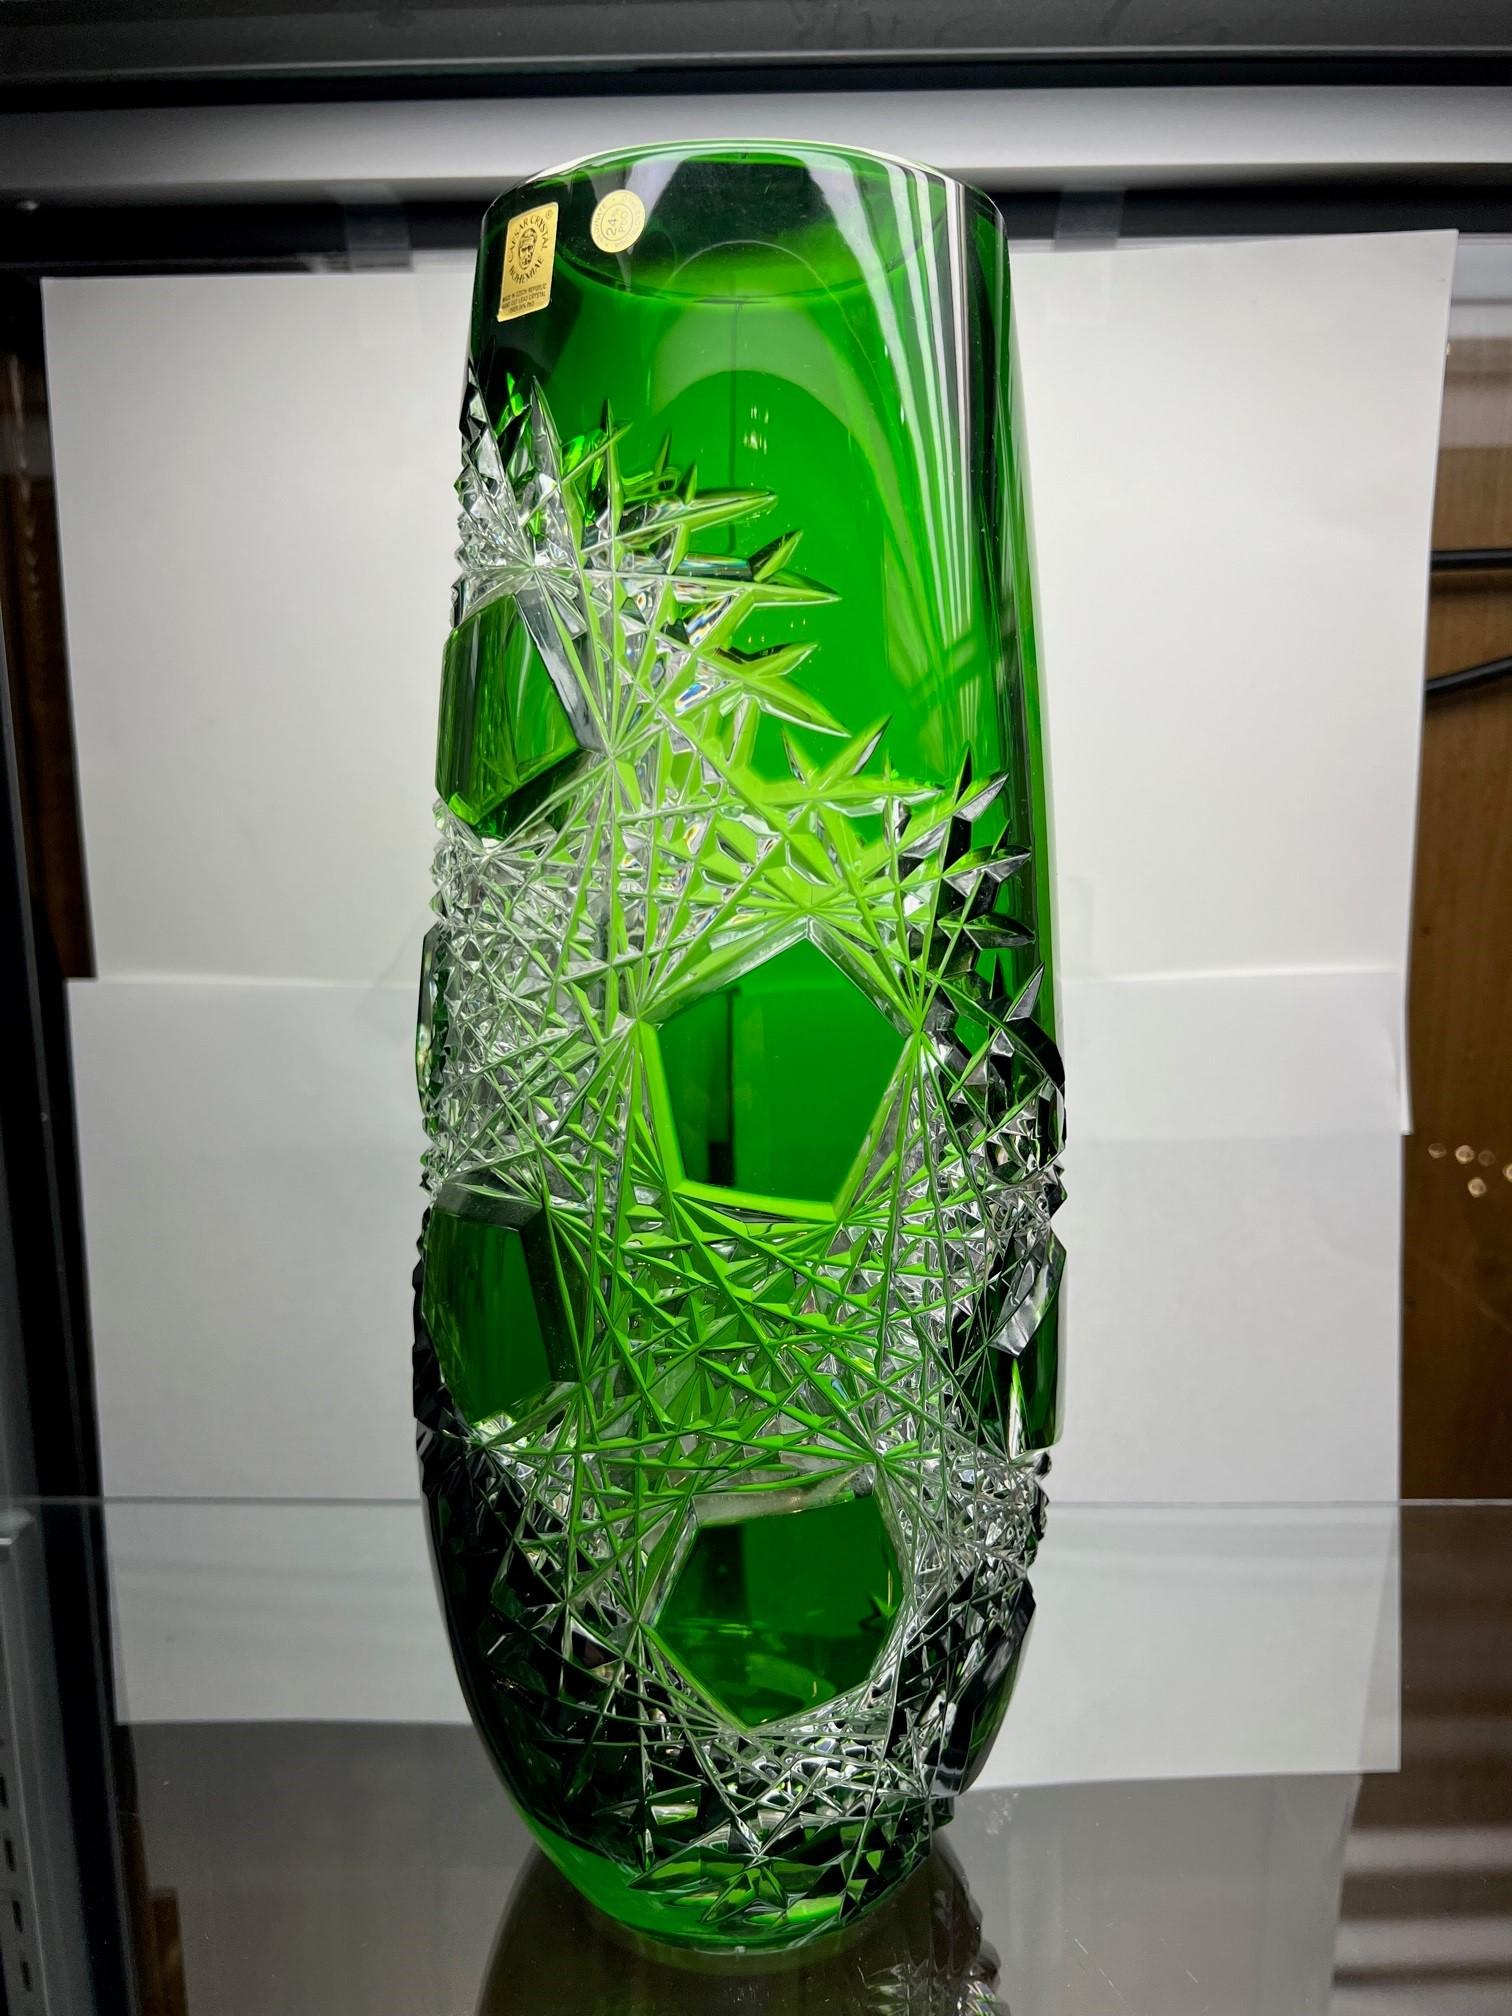 Atemberaubende Vase aus handgeschliffenem Bleikristall, die von den Händen der besten tschechischen Glasmacher als Kunstwerk geschaffen wurde. Die Caesar Crystal Company in der Tschechischen Republik vertreibt seit 1861 handgeschliffene